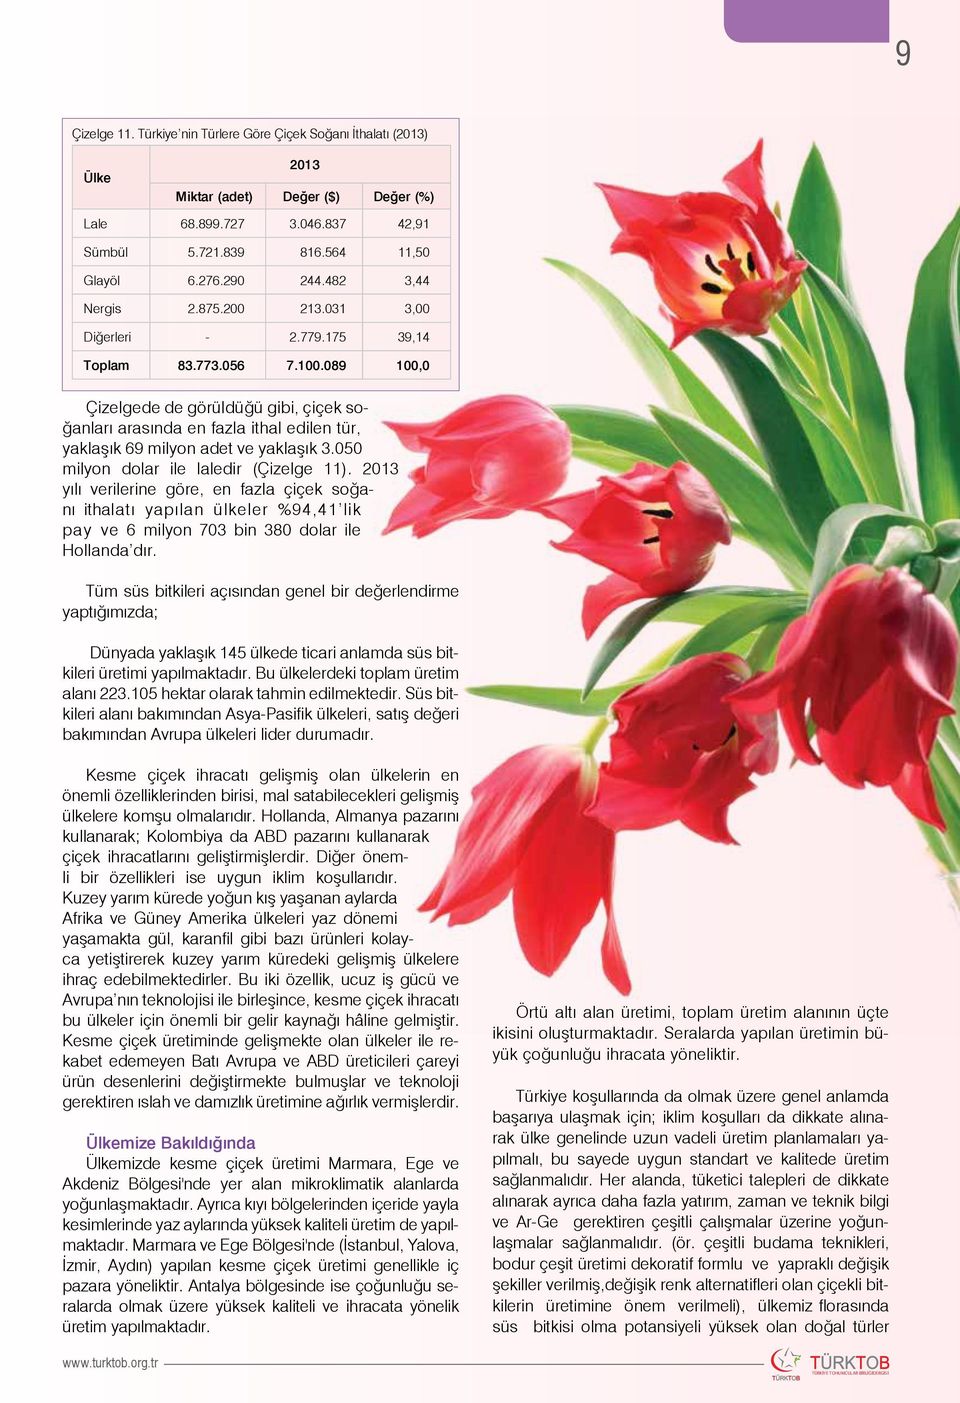 050 milyon dolar ile laledir (Çizelge 11). yılı verilerine göre, en fazla çiçek soğanı ithalatı yapılan ülkeler 94,41 lik pay ve 6 milyon 703 bin 380 dolar ile Hollanda dır.